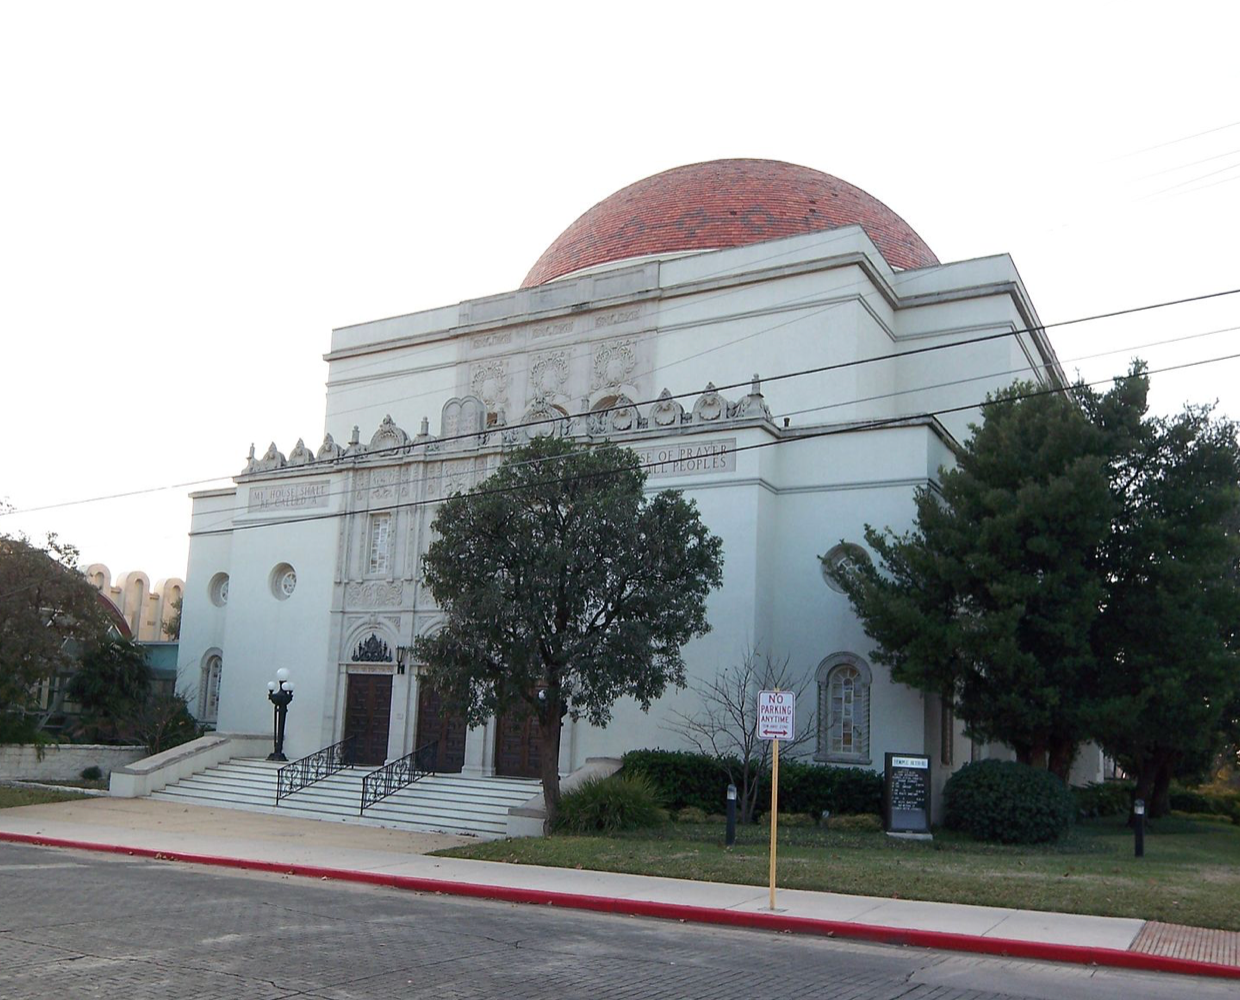 Temple Beth-El in San Antonio Texas has suspended services over a credible security threat